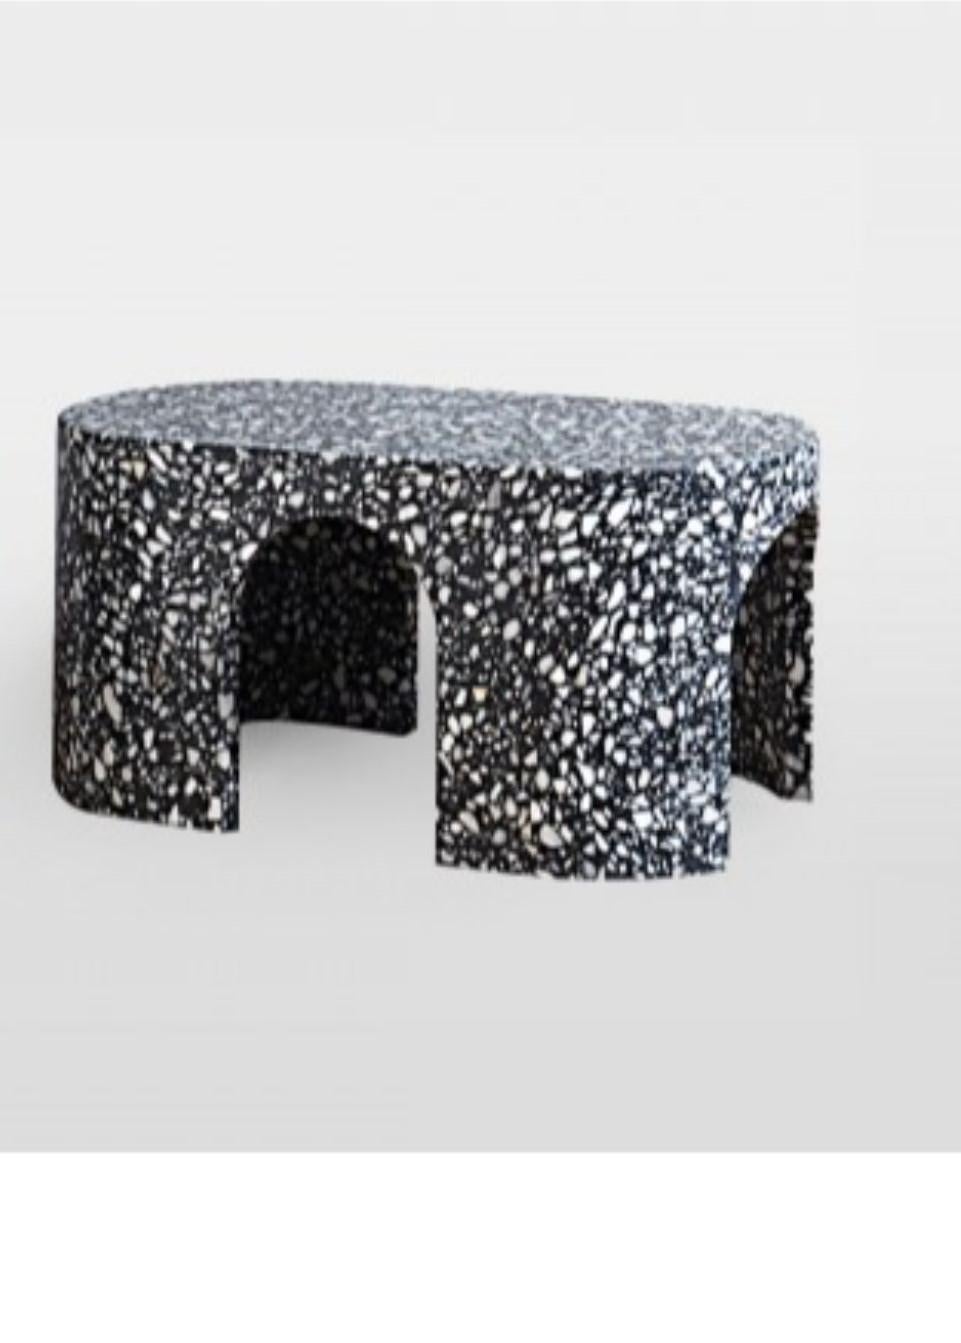 Table basse Loggia Terrazzo de Matteo Leorato
Dimensions : D 80 x L 40 x H 37 cm
Matériaux : Terrazzo (marbre et résine). 
Également disponible en Whiting. Veuillez nous contacter pour plus d'informations. 


Un élément essentiel au fort impact